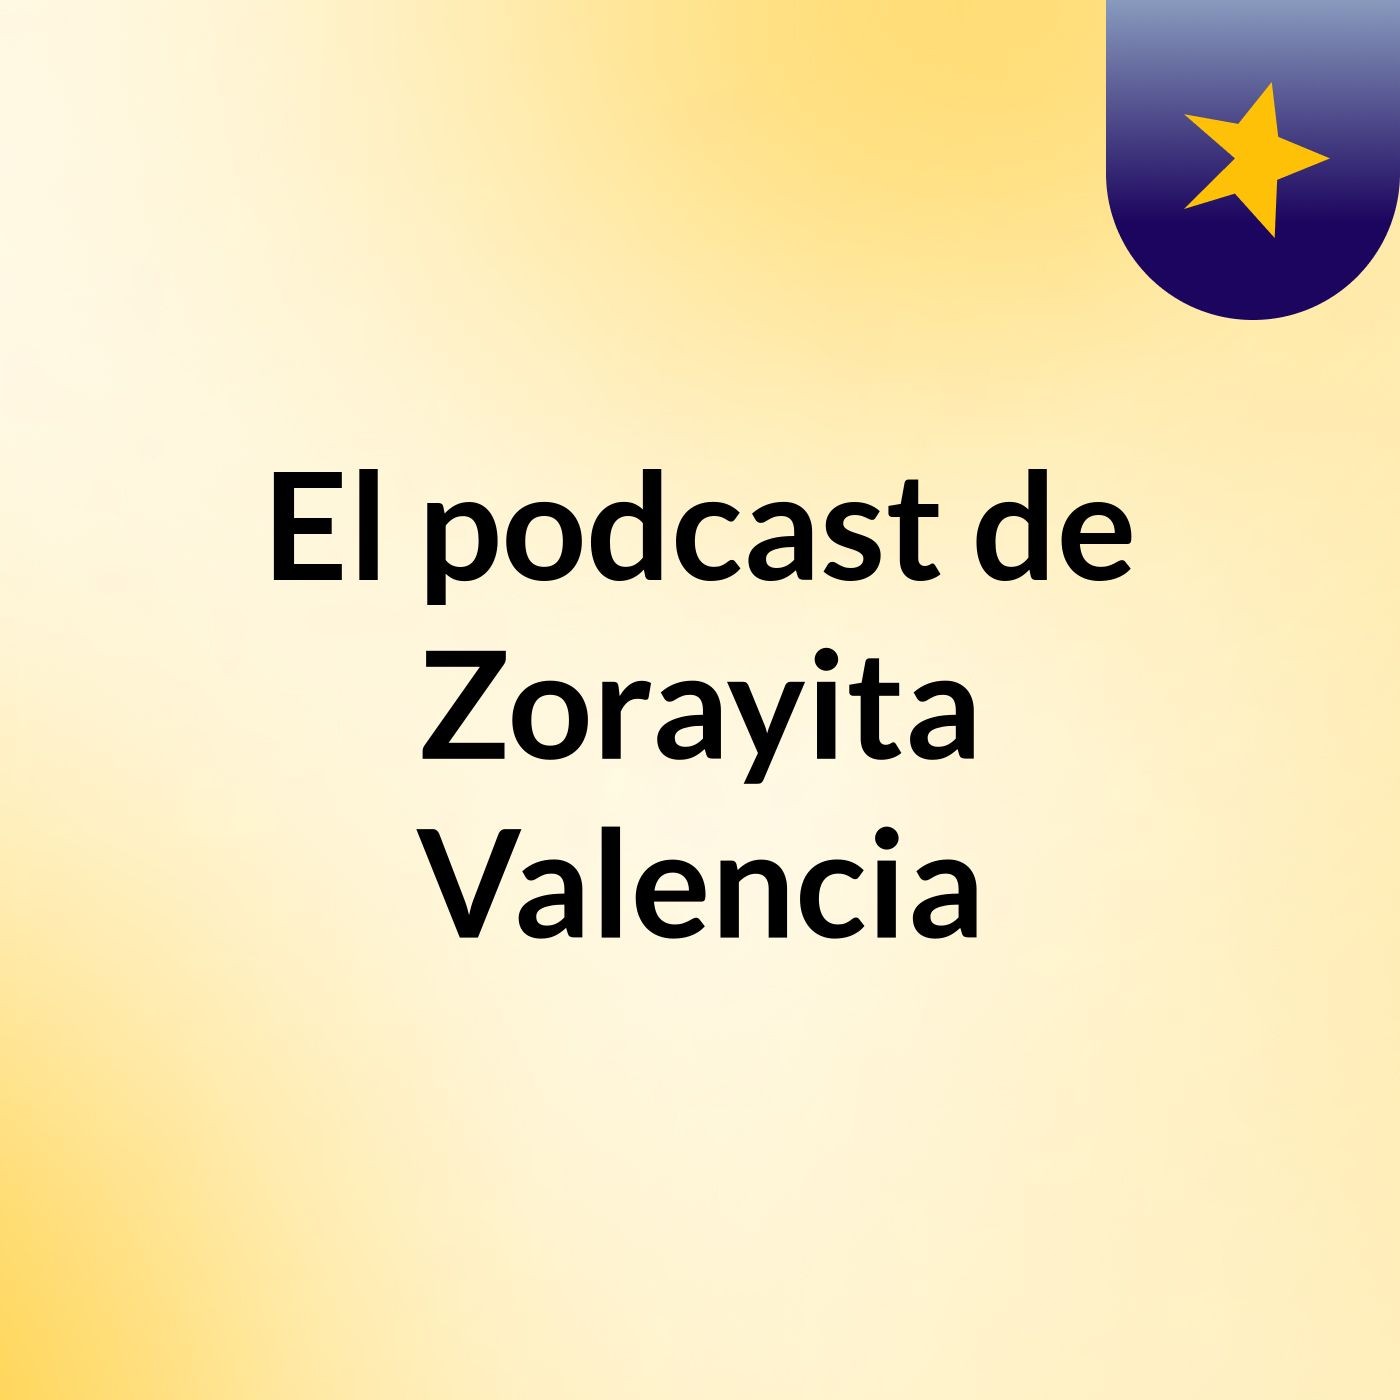 El podcast de Zorayita Valencia